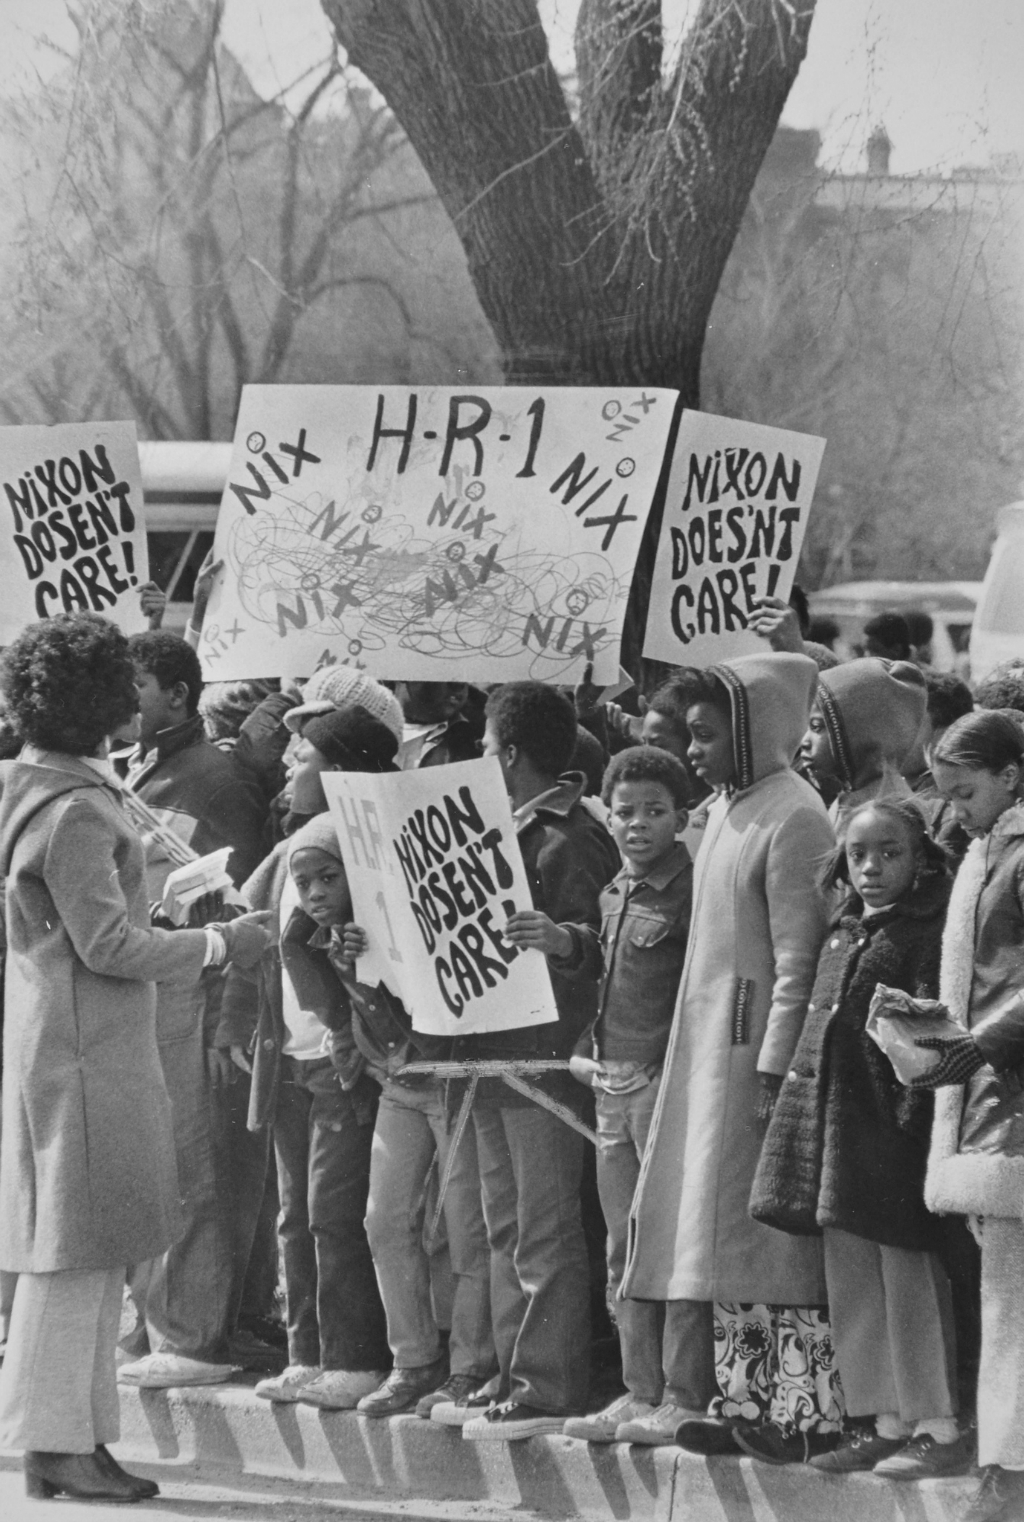 Children's March for Survival, Washington D.C., 1972